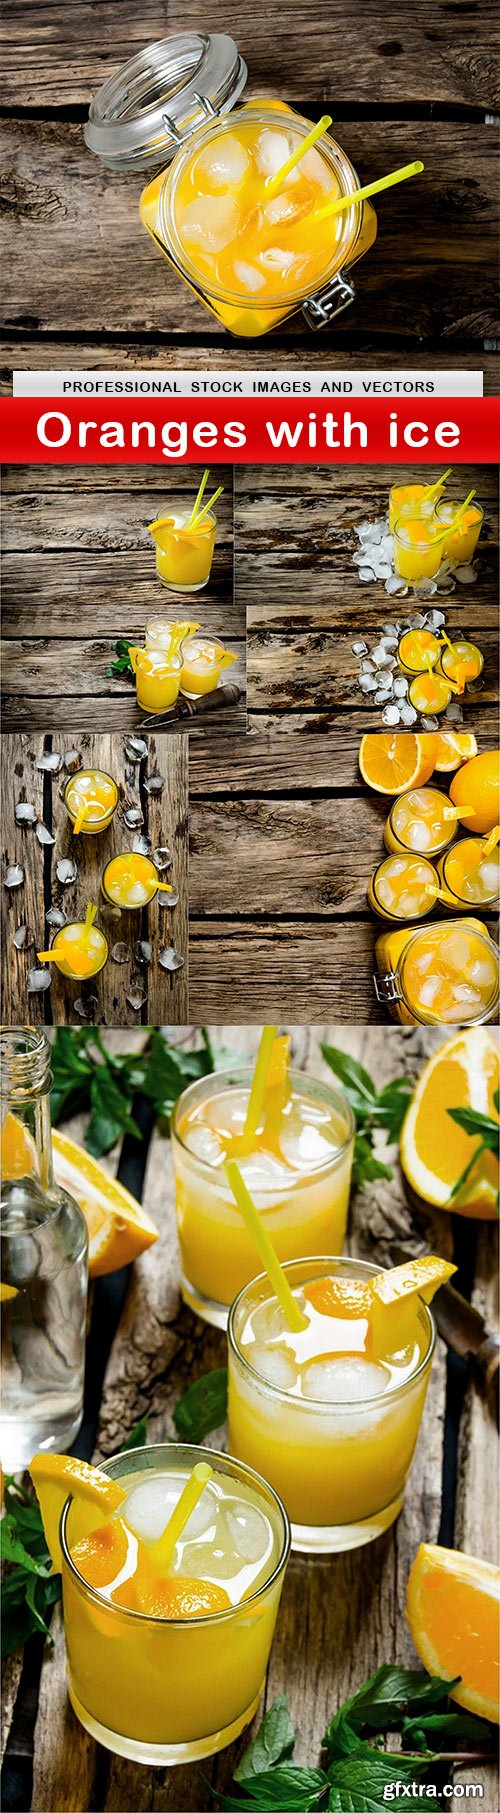 Oranges with ice - 8 UHQ JPEG